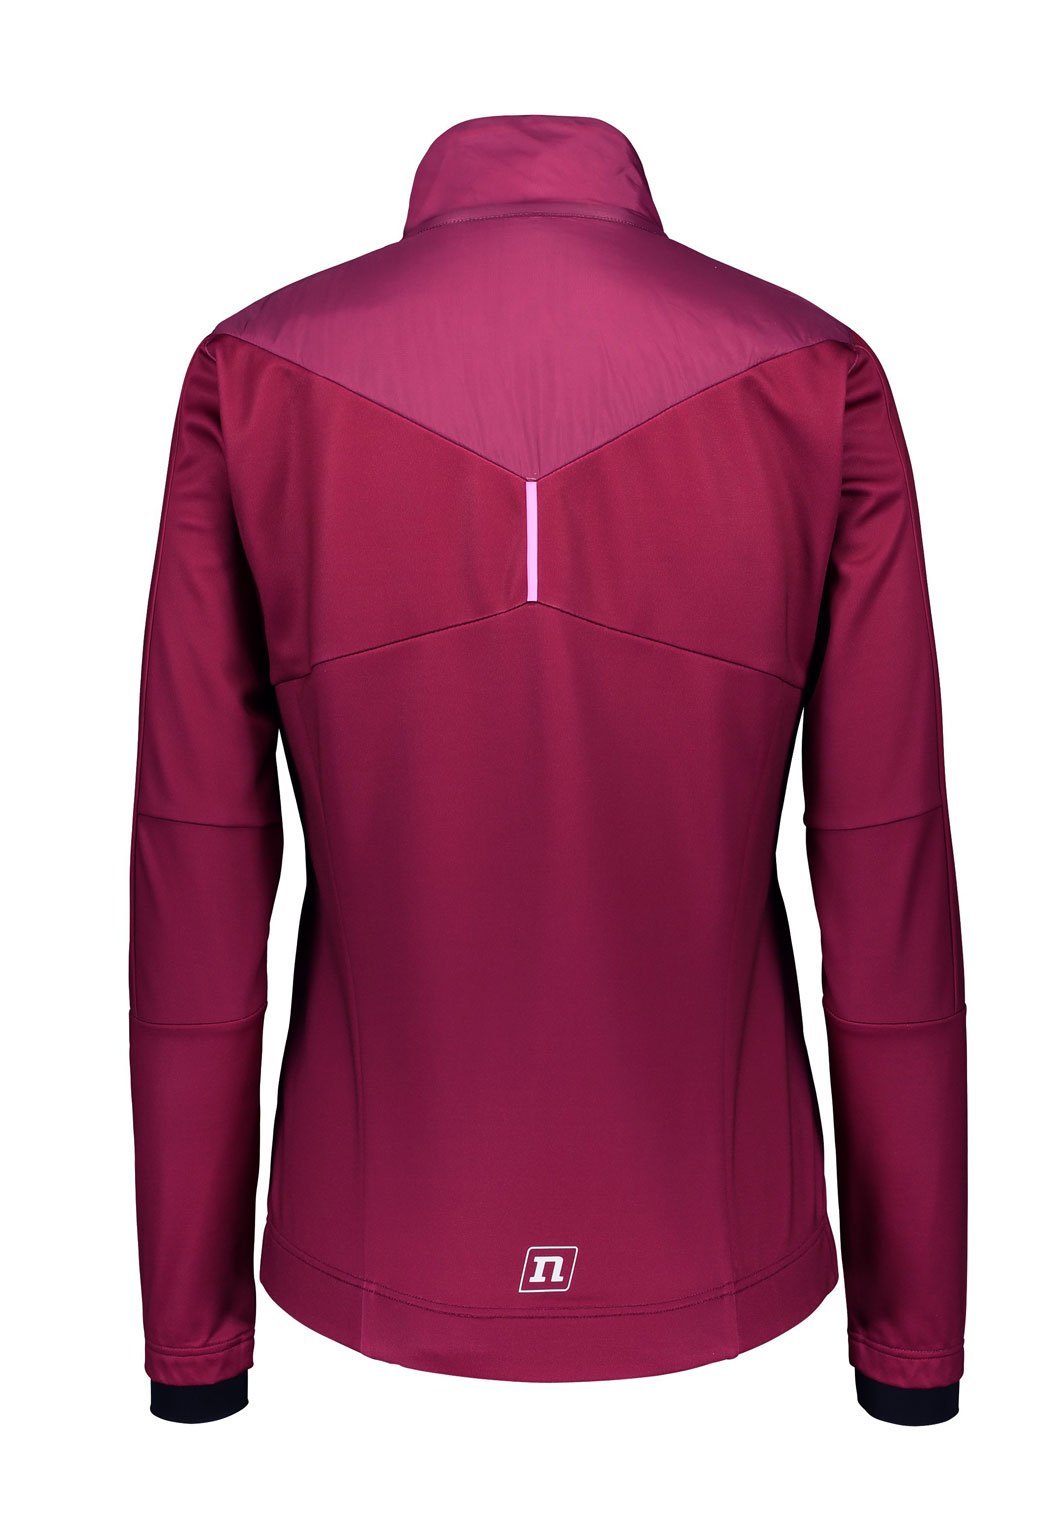 Noname Hybrid лыжная куртка женская purple - 2